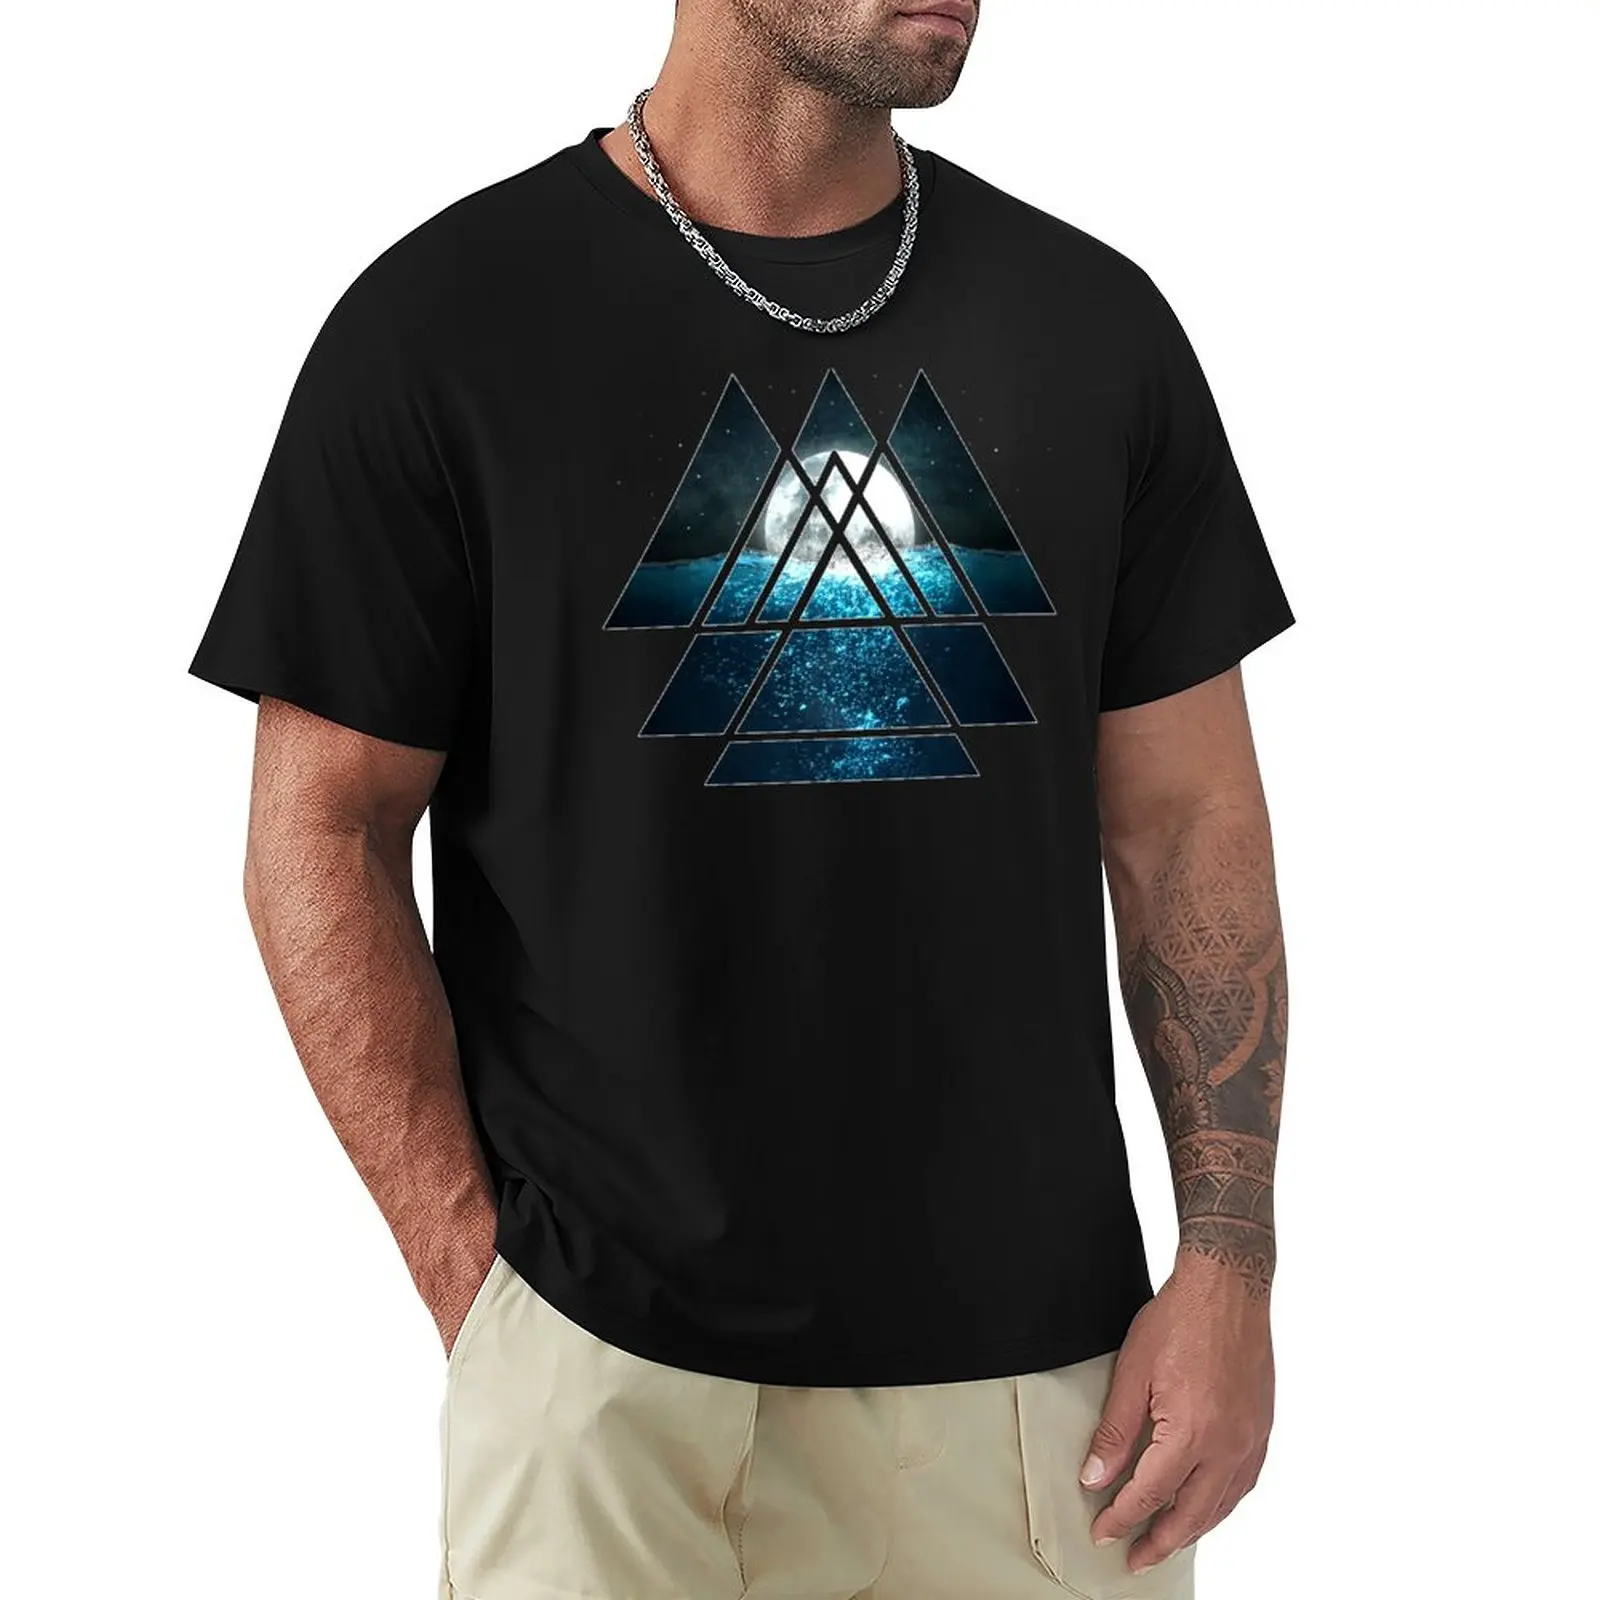 

Мужская футболка с длинным рукавом и изображением священных геометрических треугольников и ухаживающей Луны